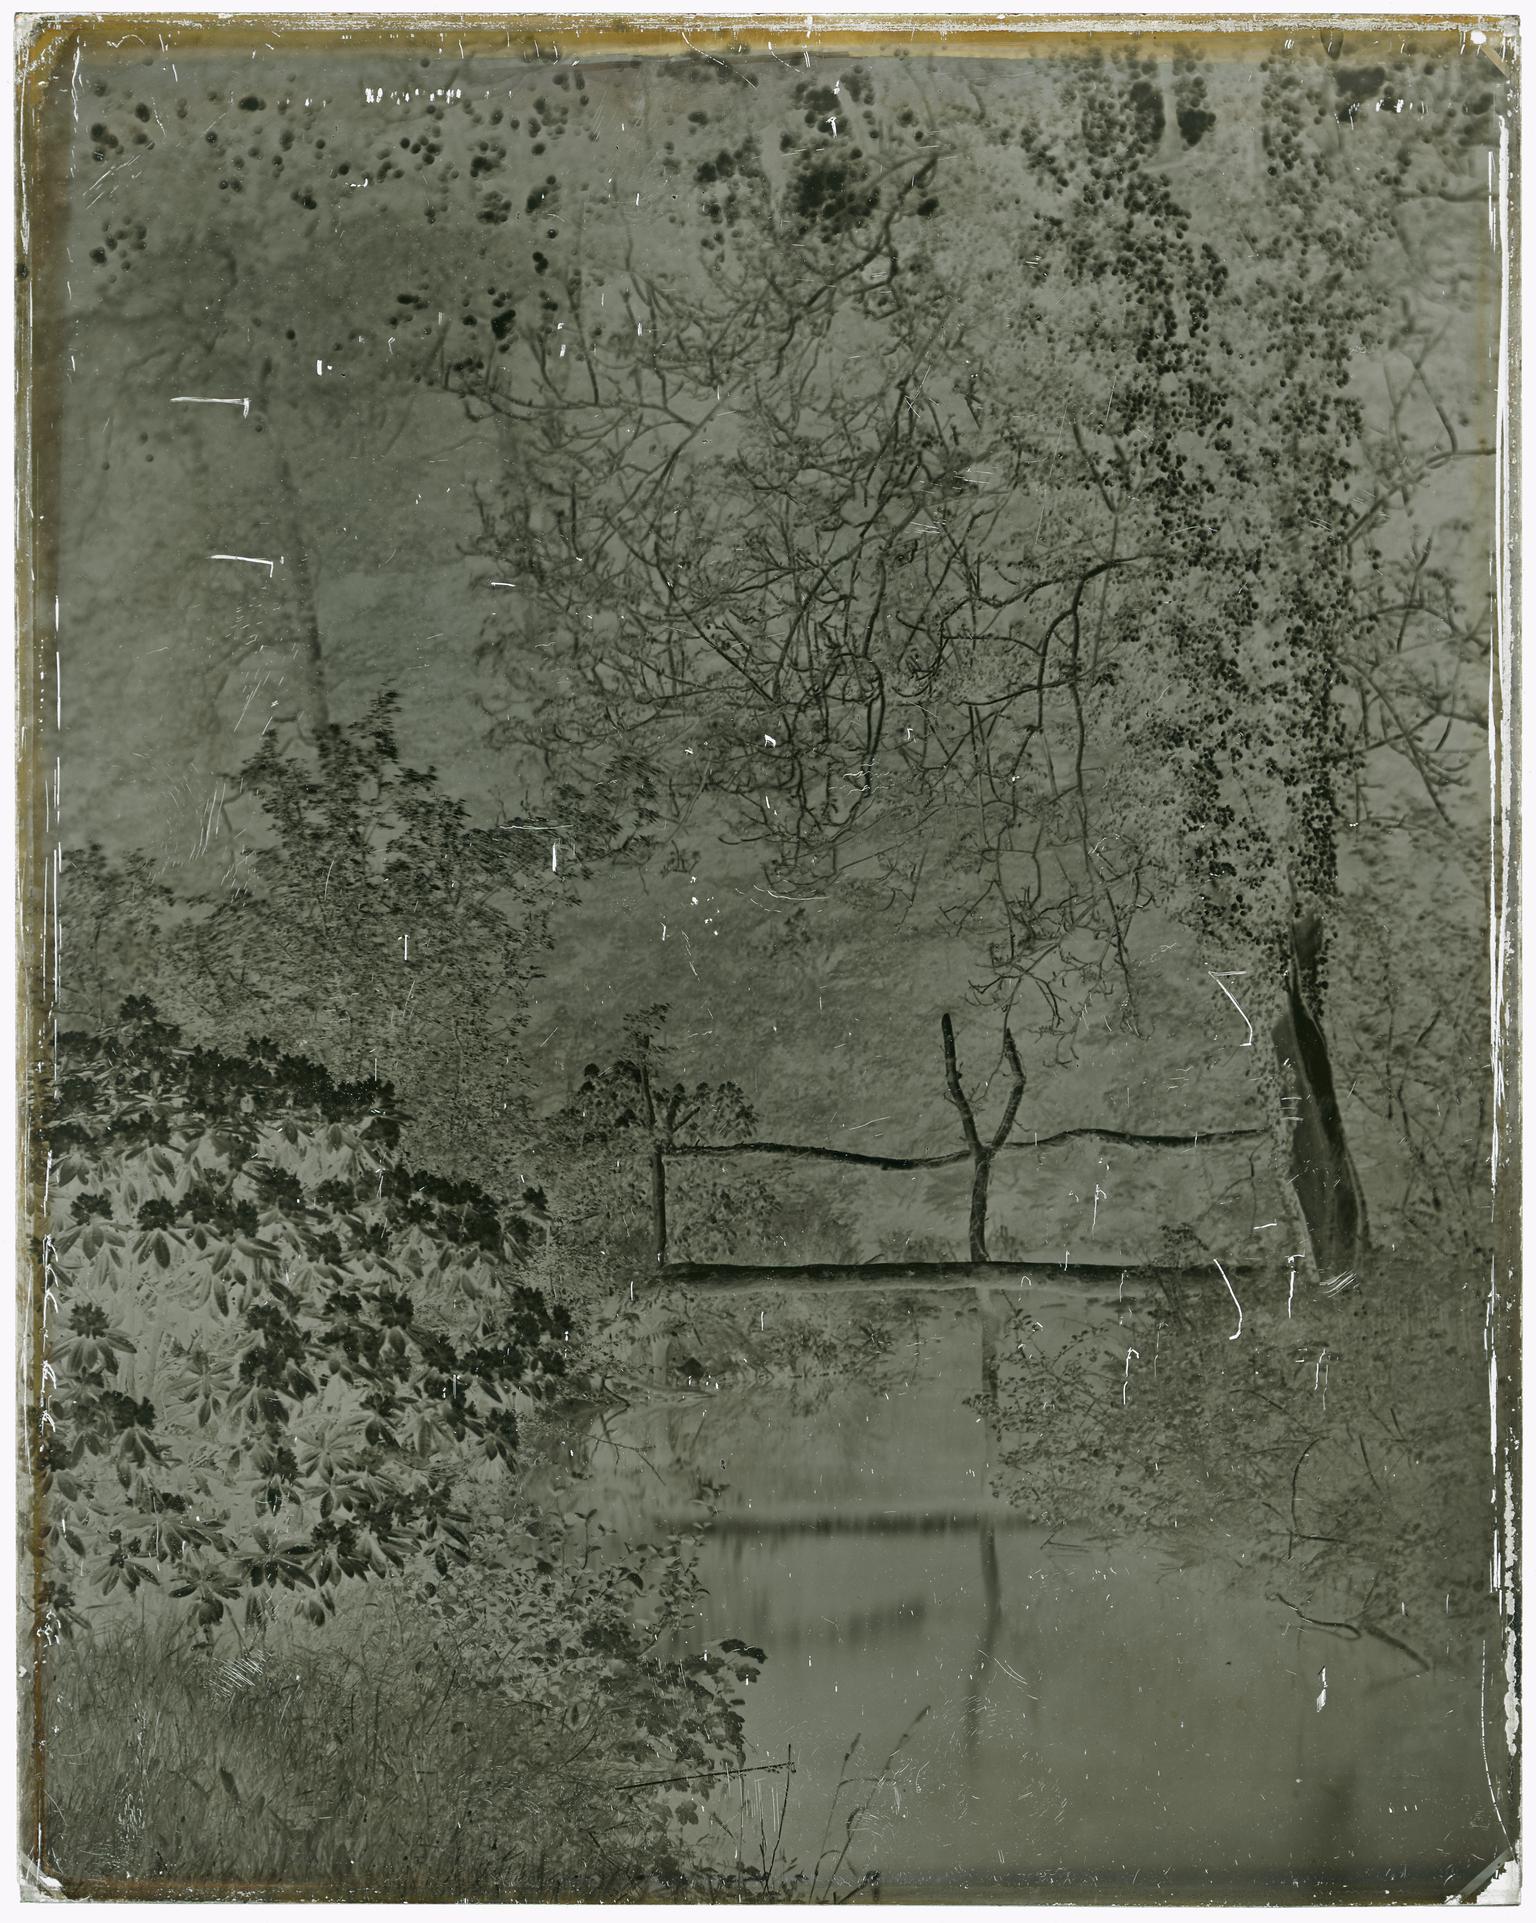 Bridge in the Valley, Penllergare (glass negative)